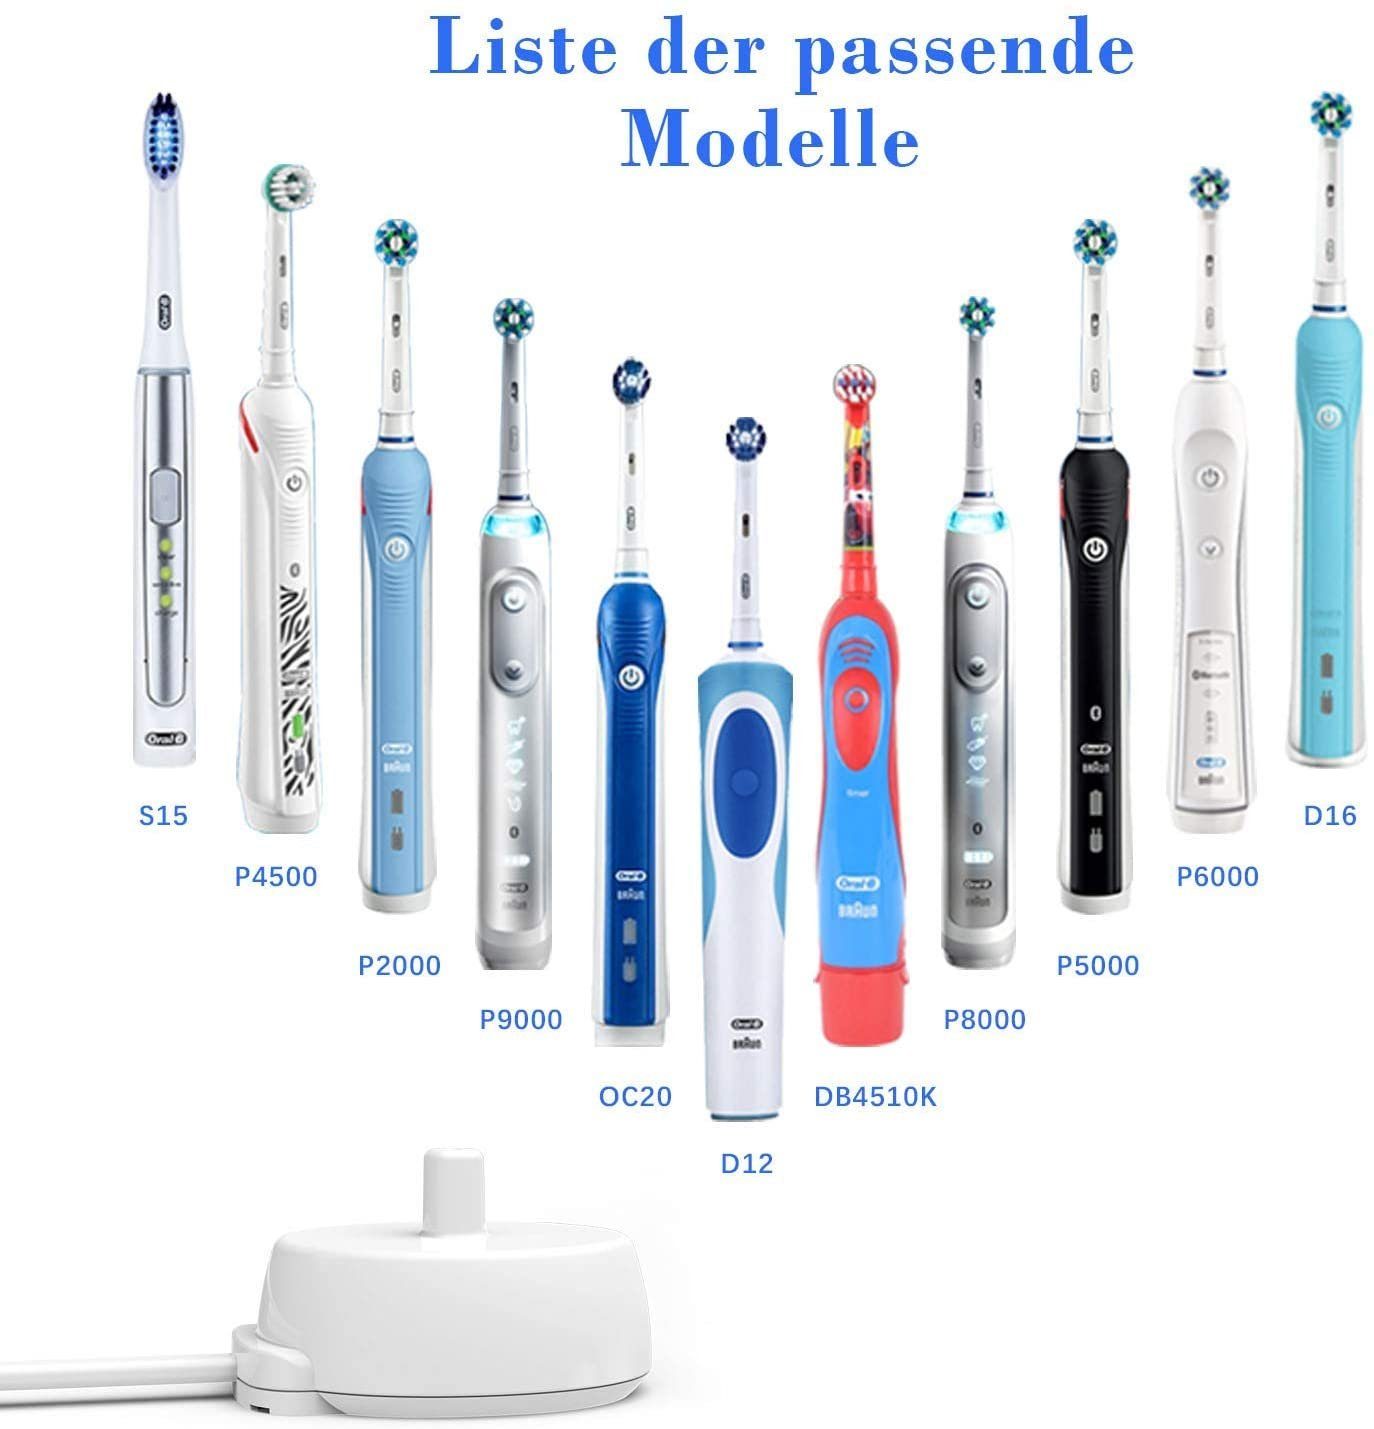 Haushalt Zahnpflege muchen Elektrische Zahnbürste Ladegerät Kompatibel mit Oral-B D17 OC18 Ladestation IP67 Wasserdichtes Ersatz